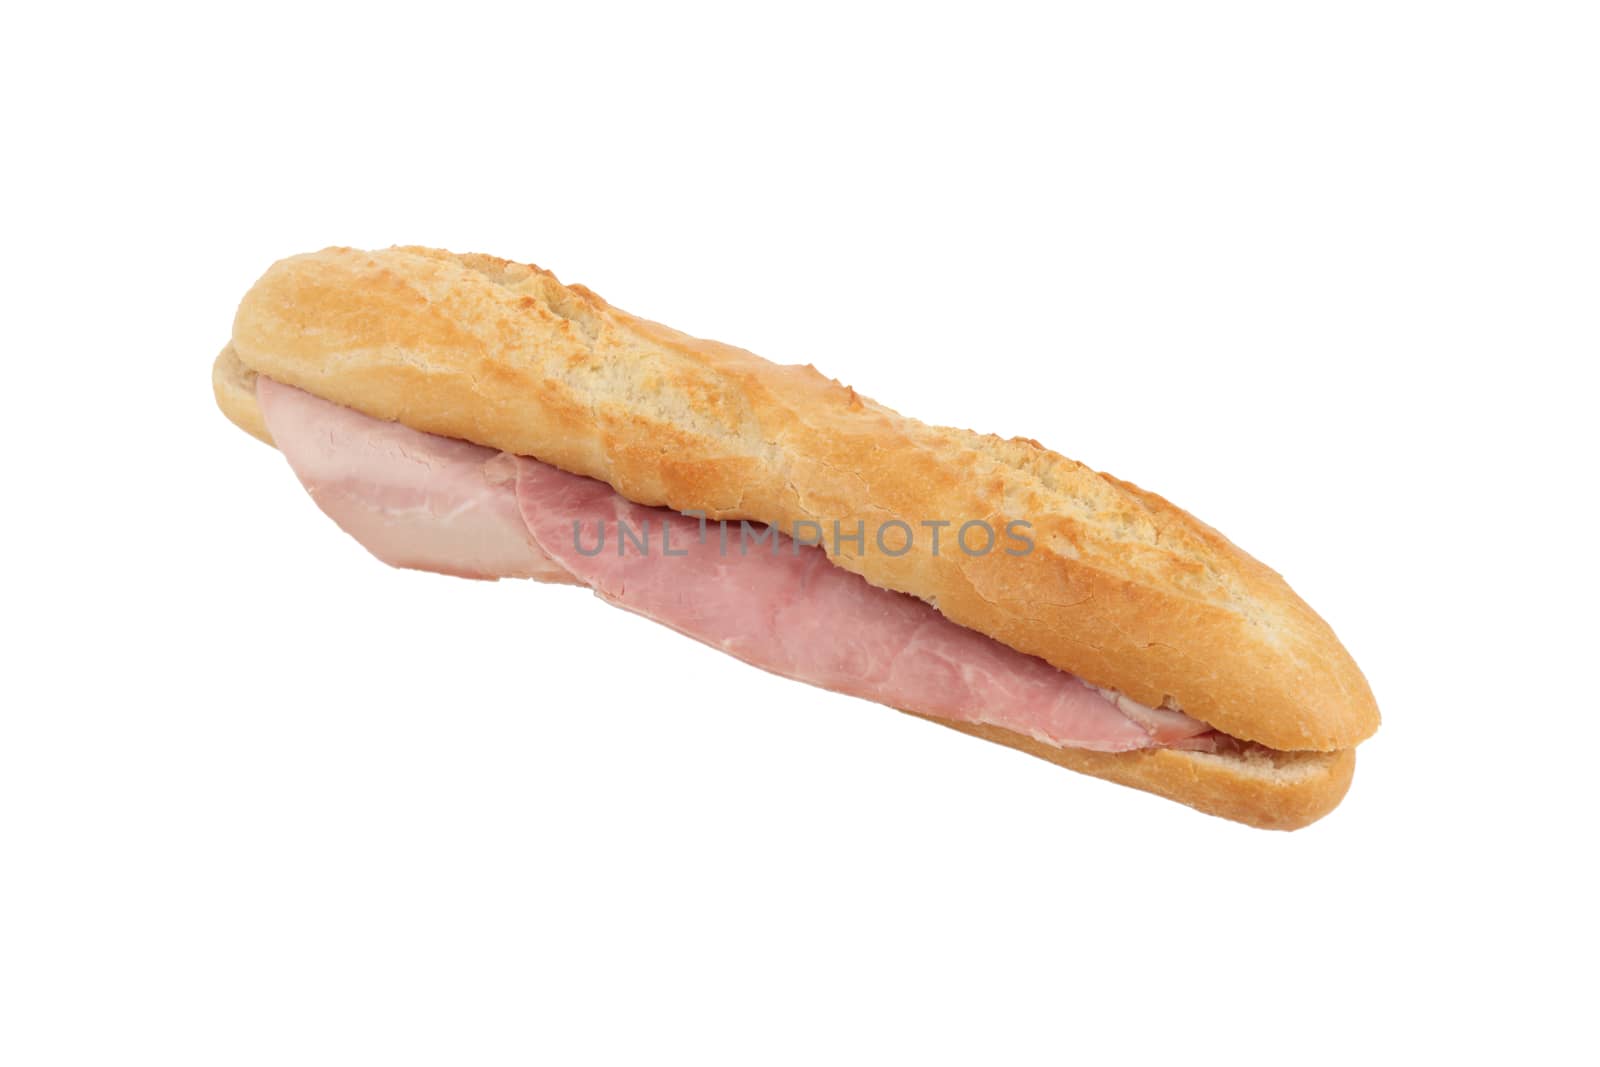 Baguette ham sandwich by phovoir